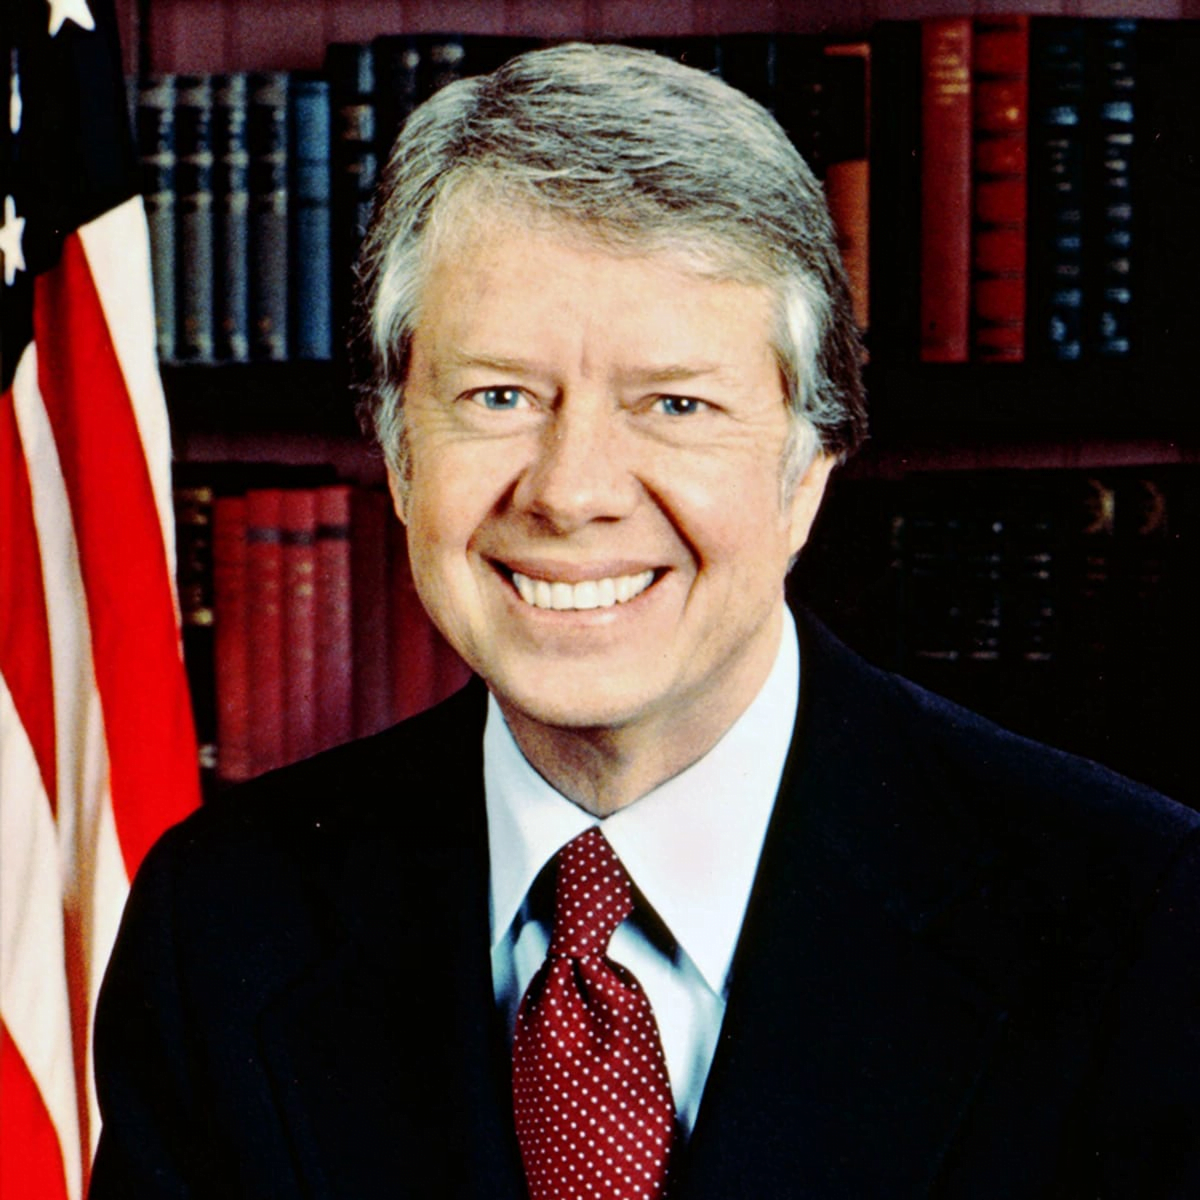 Jimmy Carter children; list of all Jimmy Carter's kids